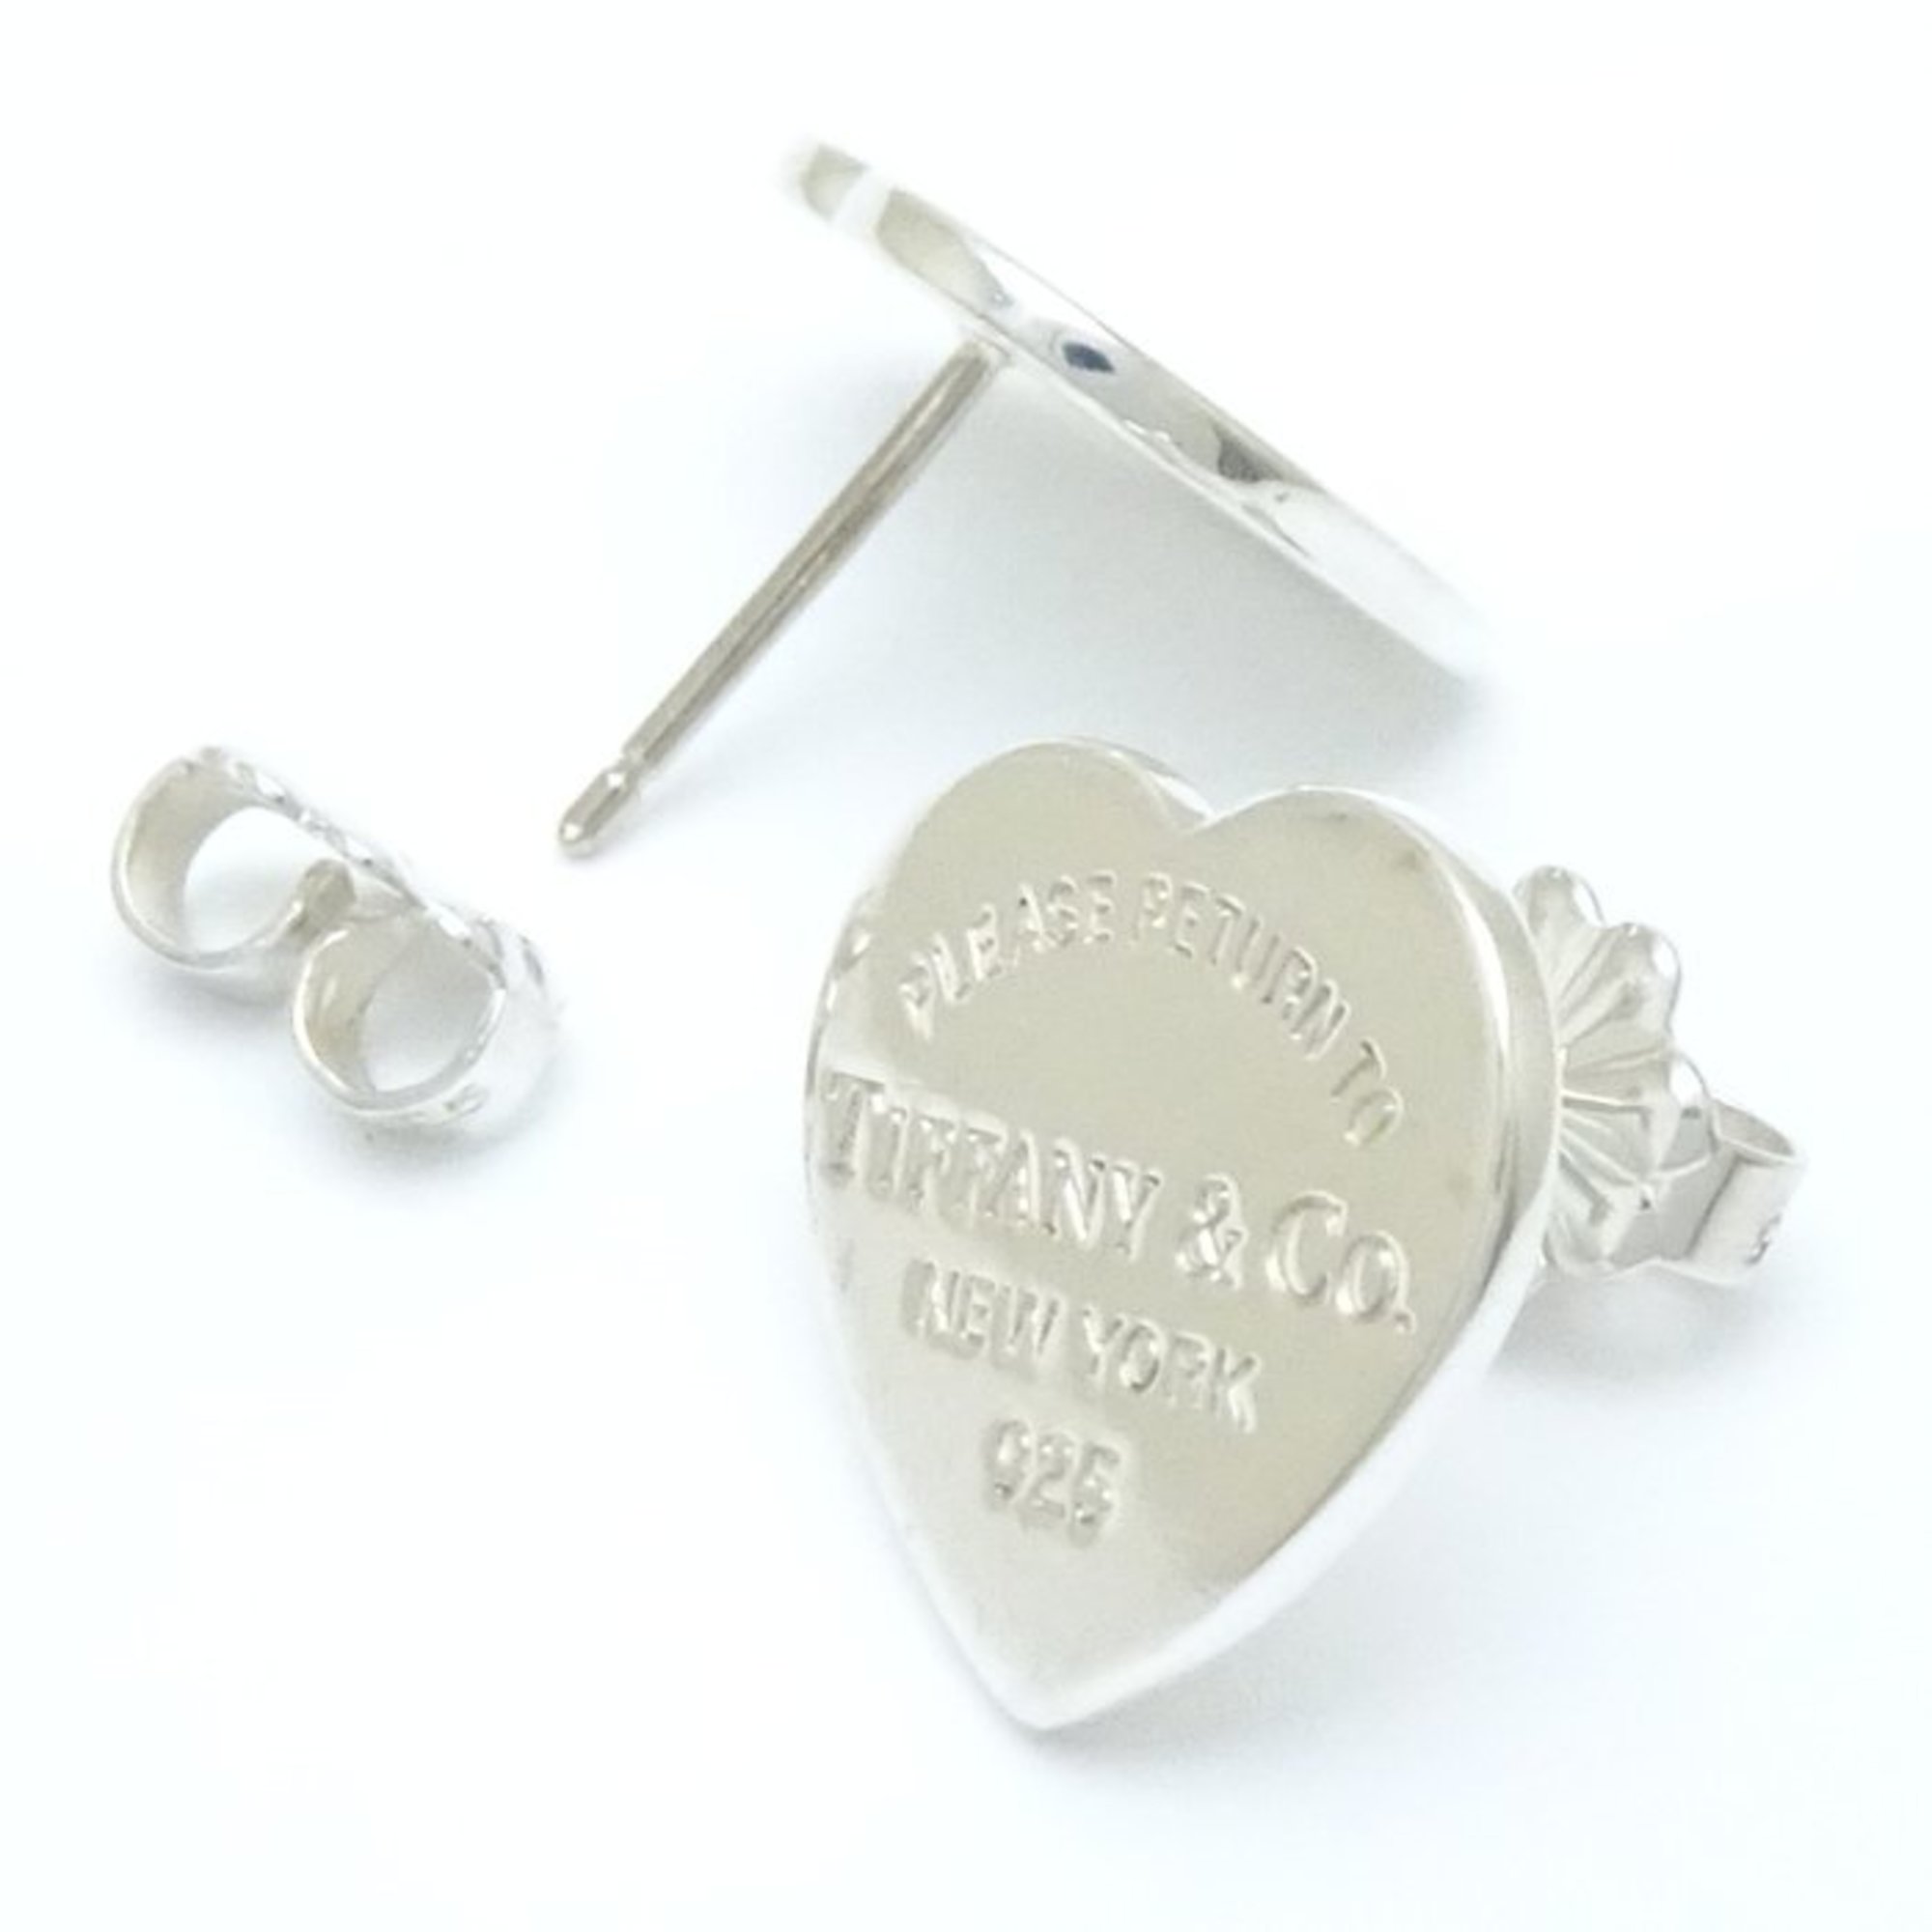 TIFFANY&Co. Tiffany Return to Heart Earrings, Silver 925, 291643